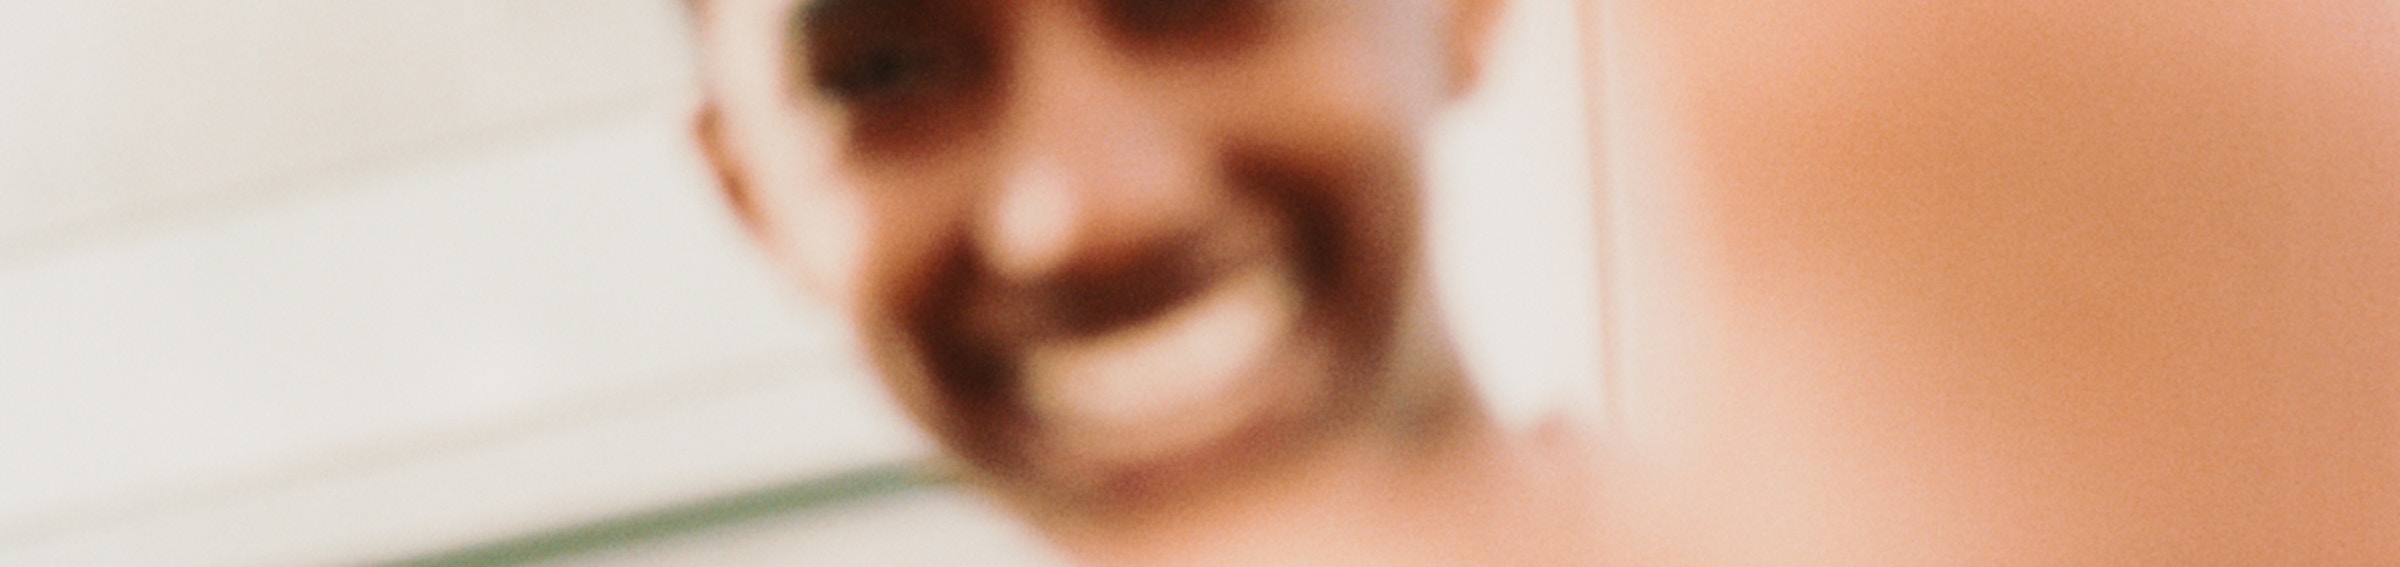 Bilde av rapperen Rambow som smiler og holder opp hånden foran kameraet.